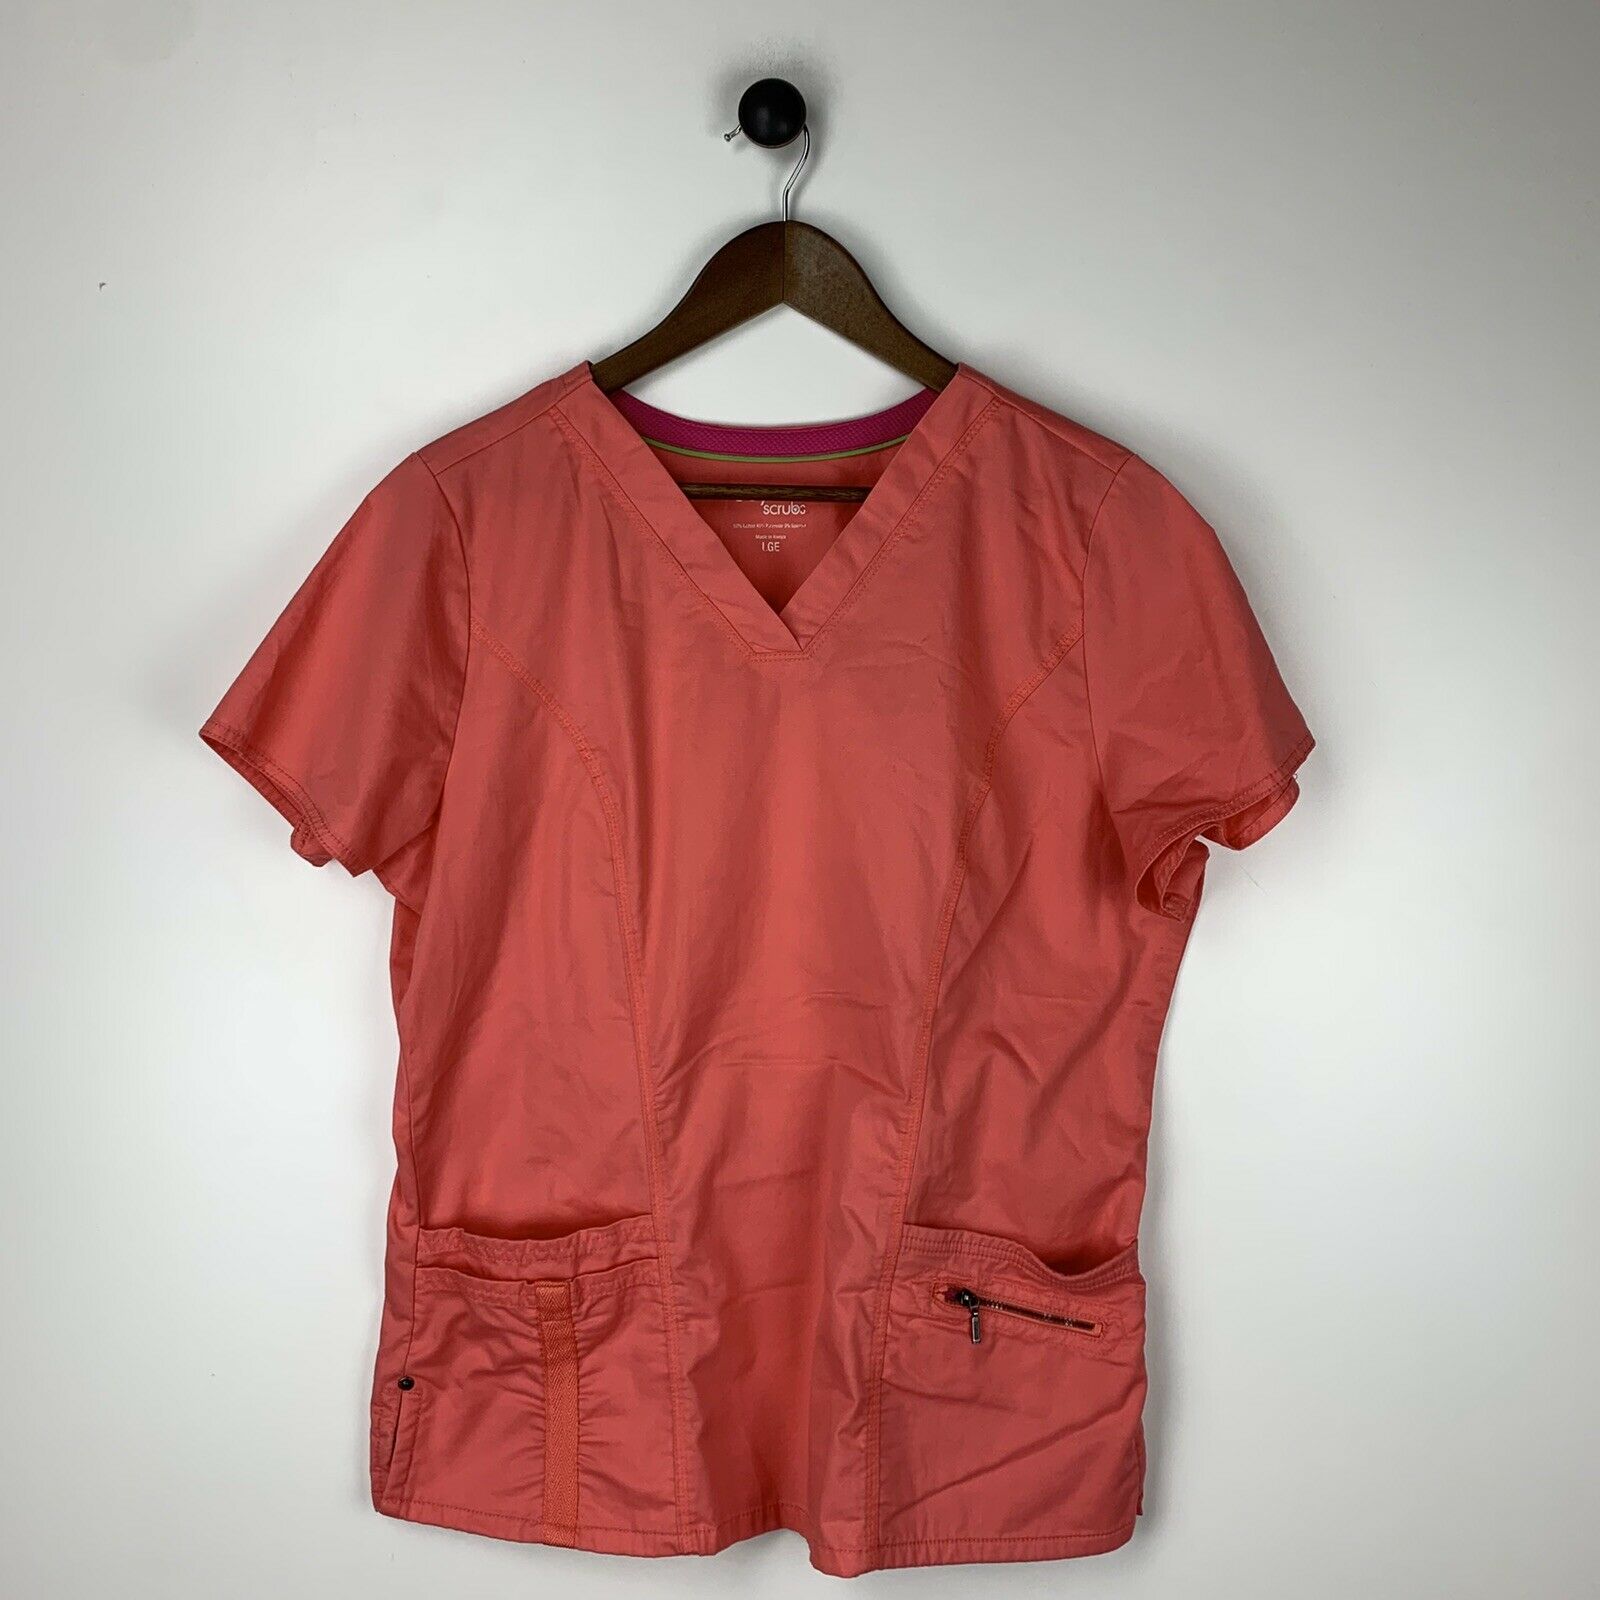 Beyond Scrubs Orange Coral Pink Short Sleeve Scrub Top Large Medical Nursing